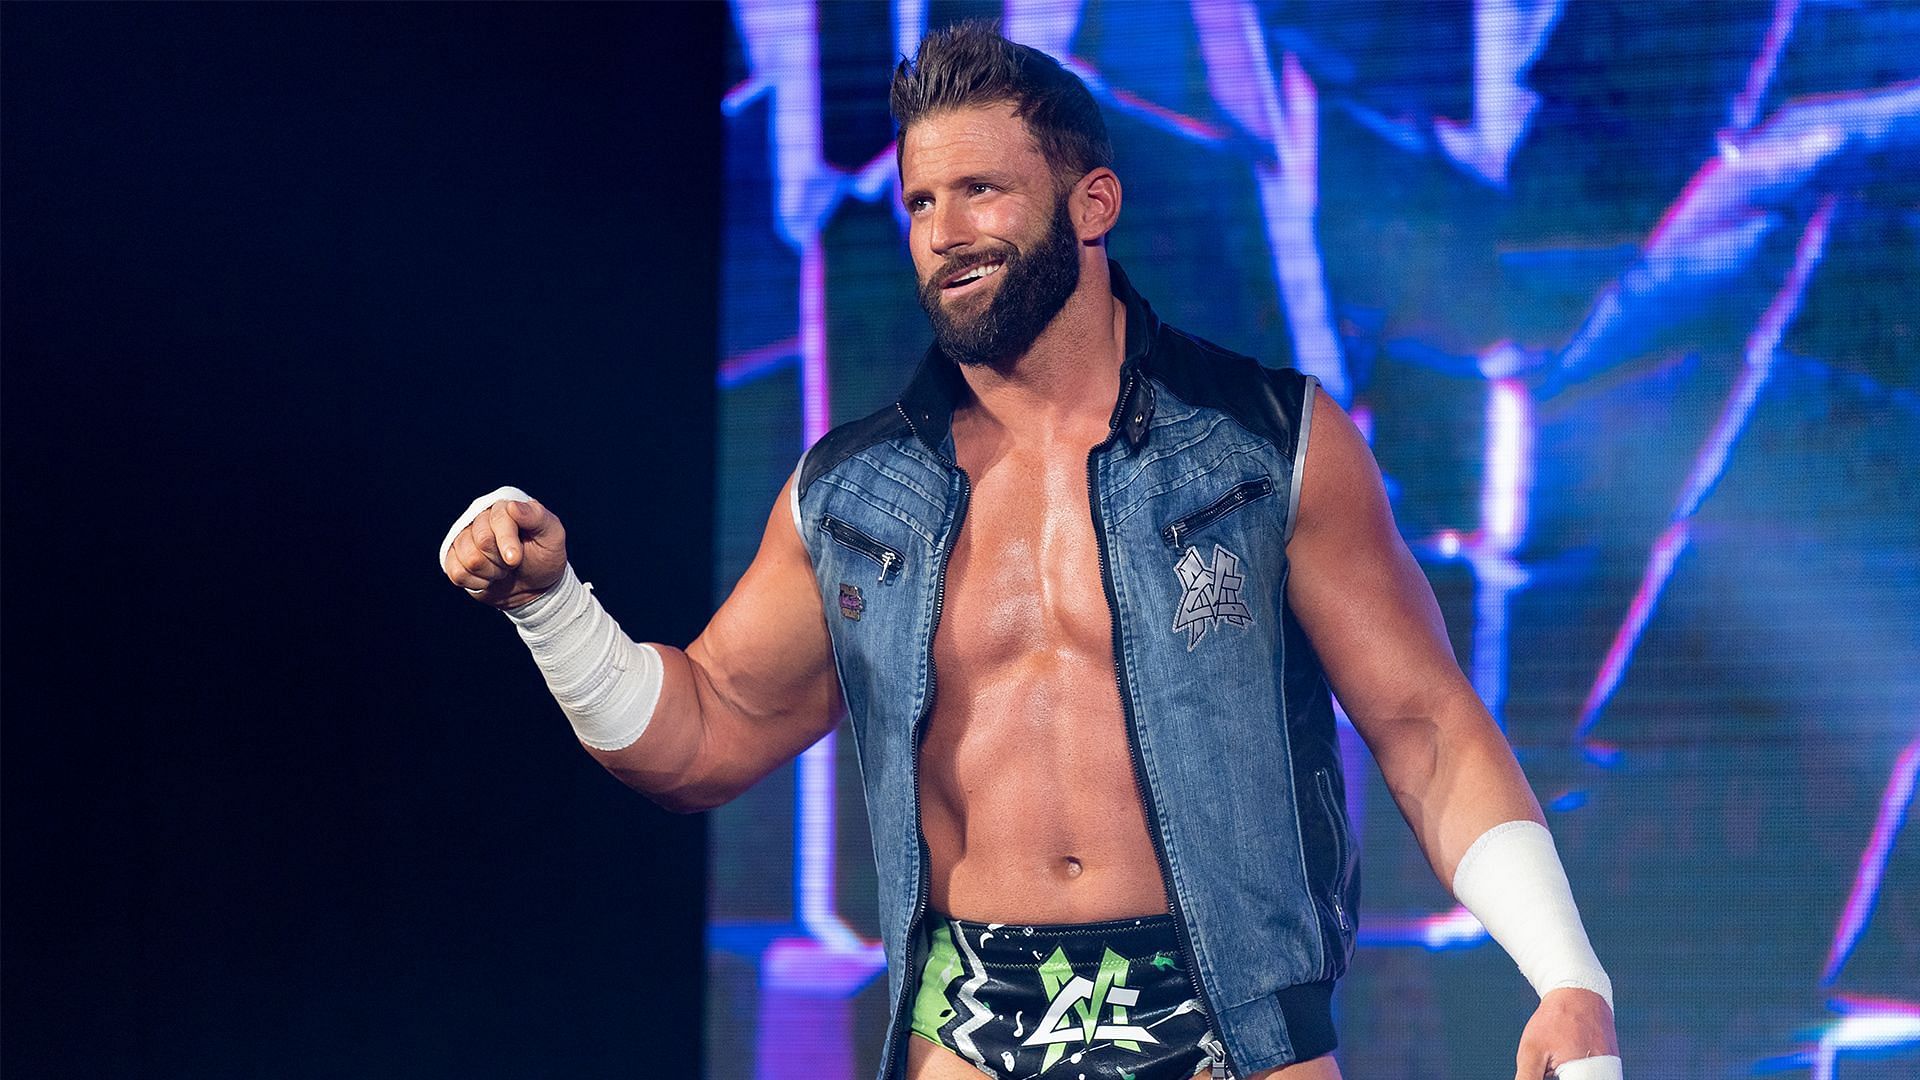 Cardona has reinvented himself leaving WWE.